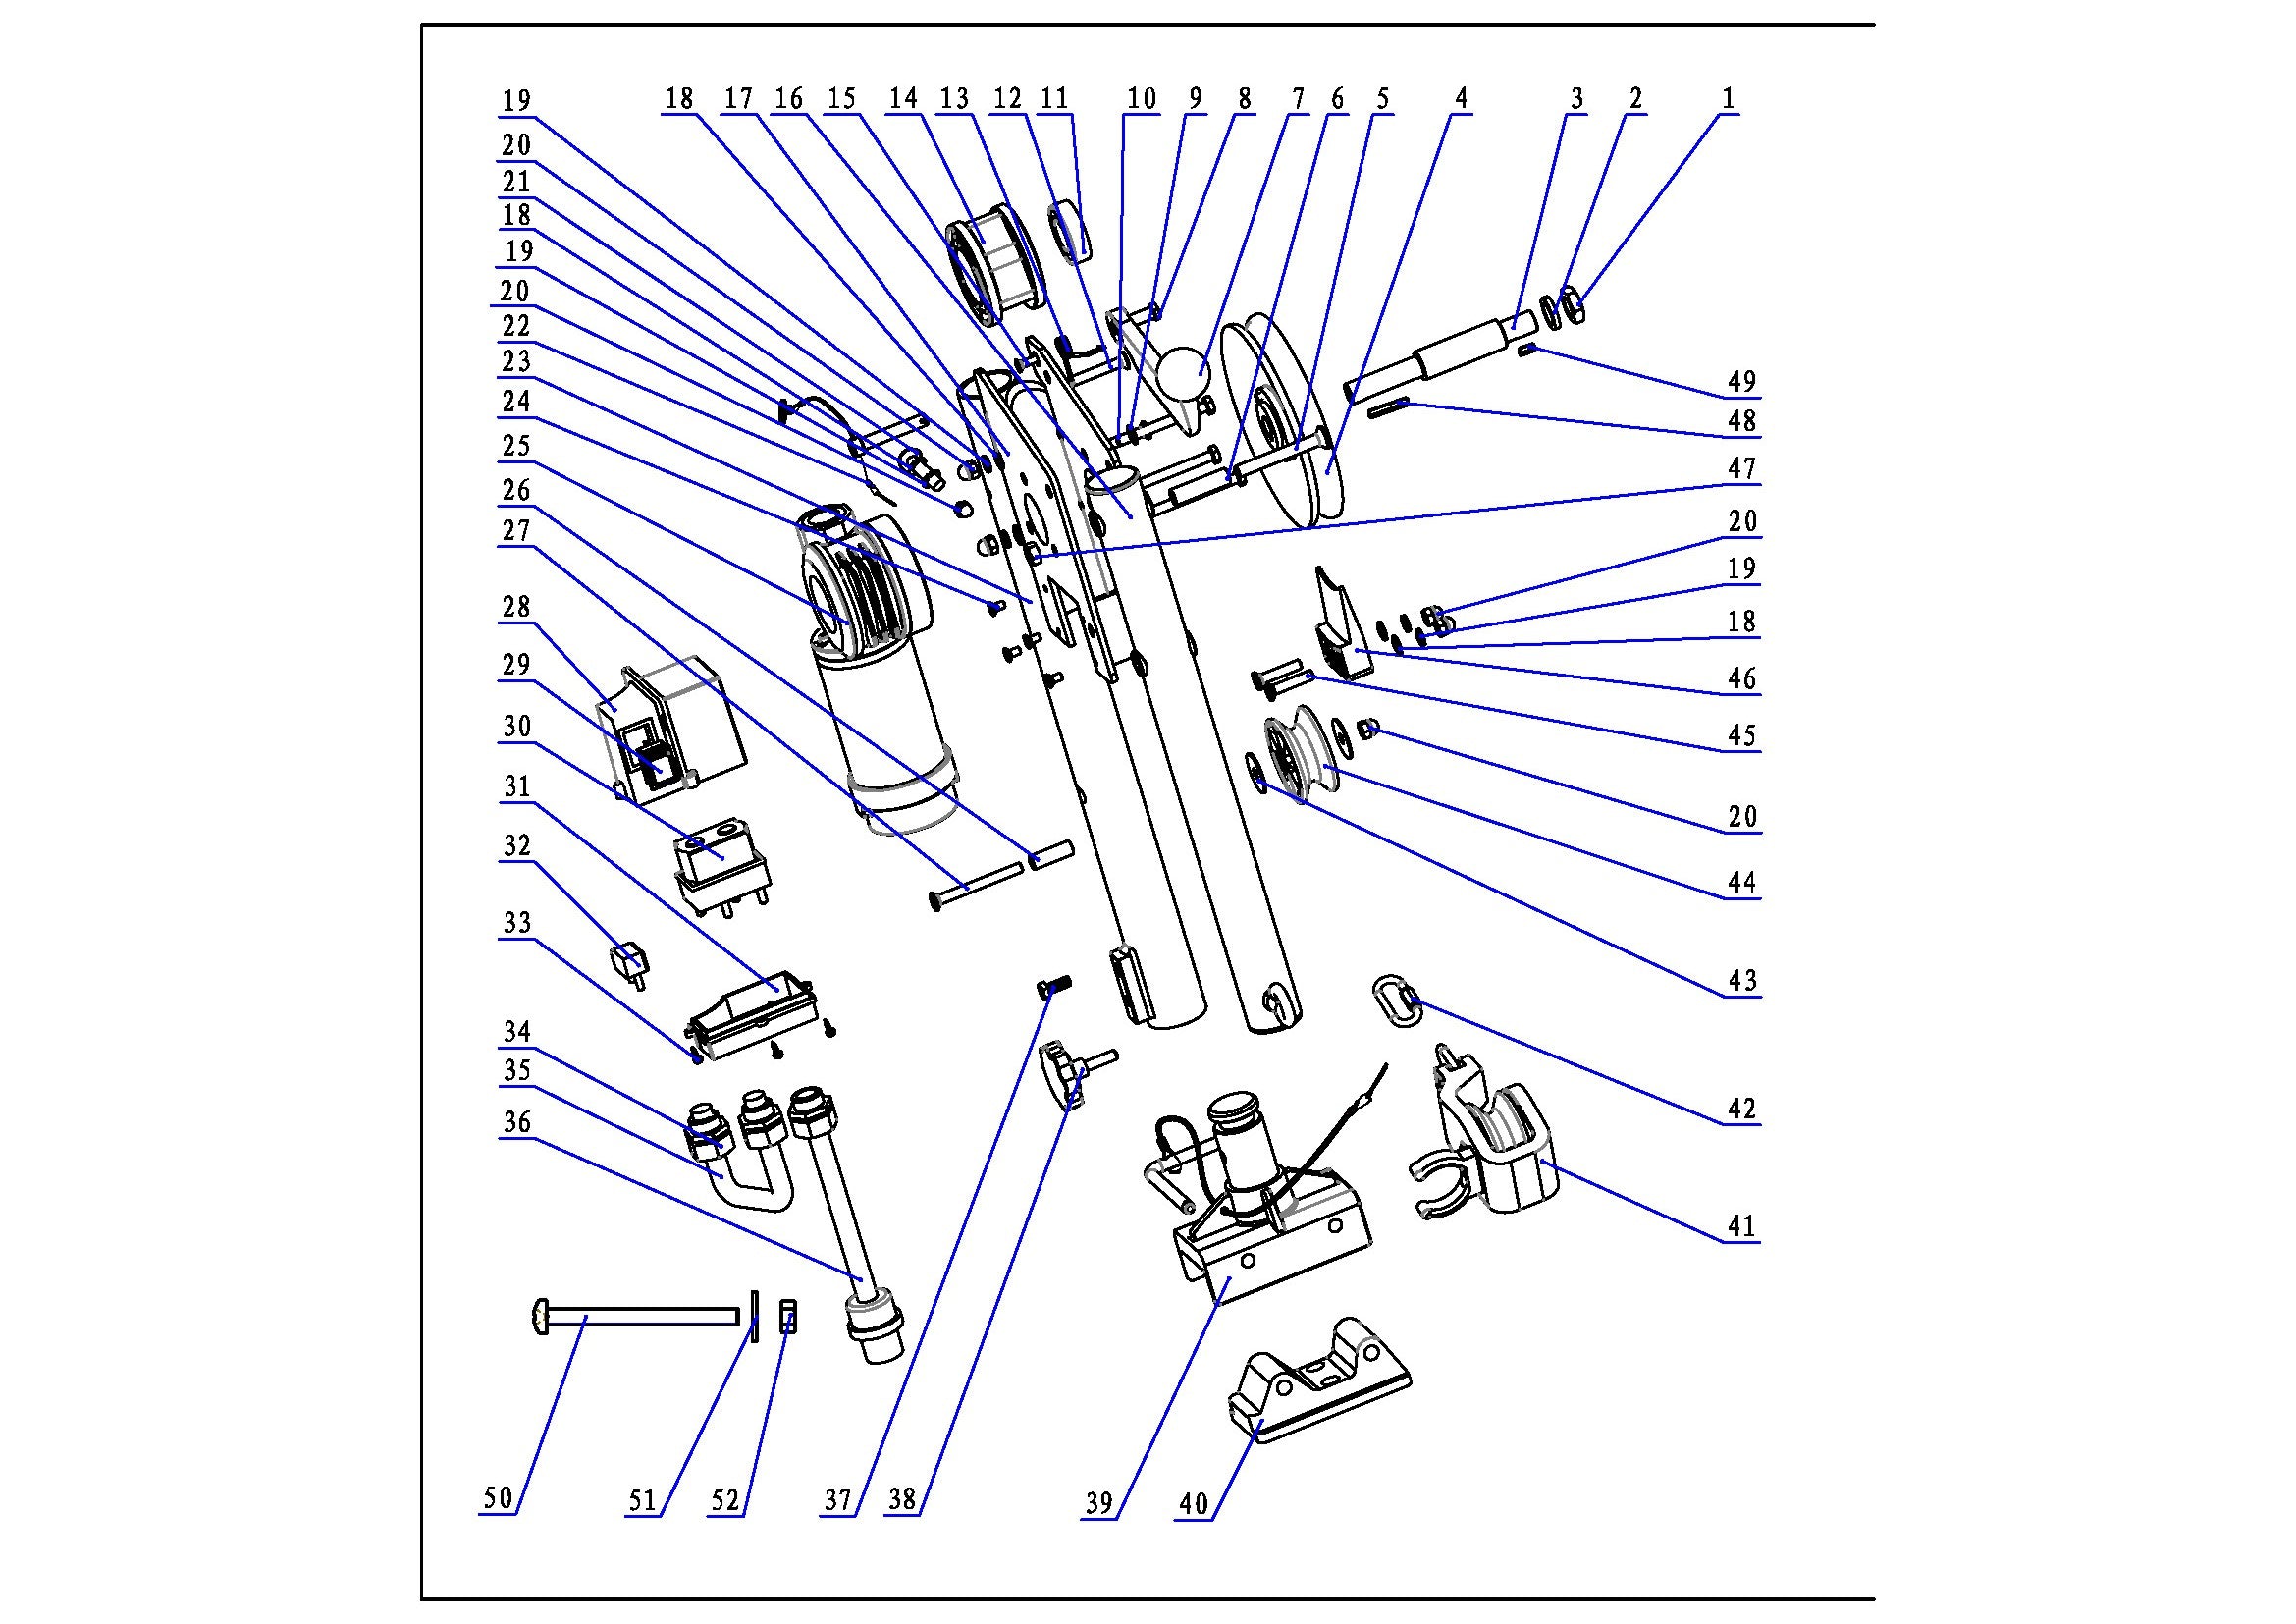 Bimetal Fuse Circuit Breaker 60 Amp - 14VDC for Line Hauler - FO4546